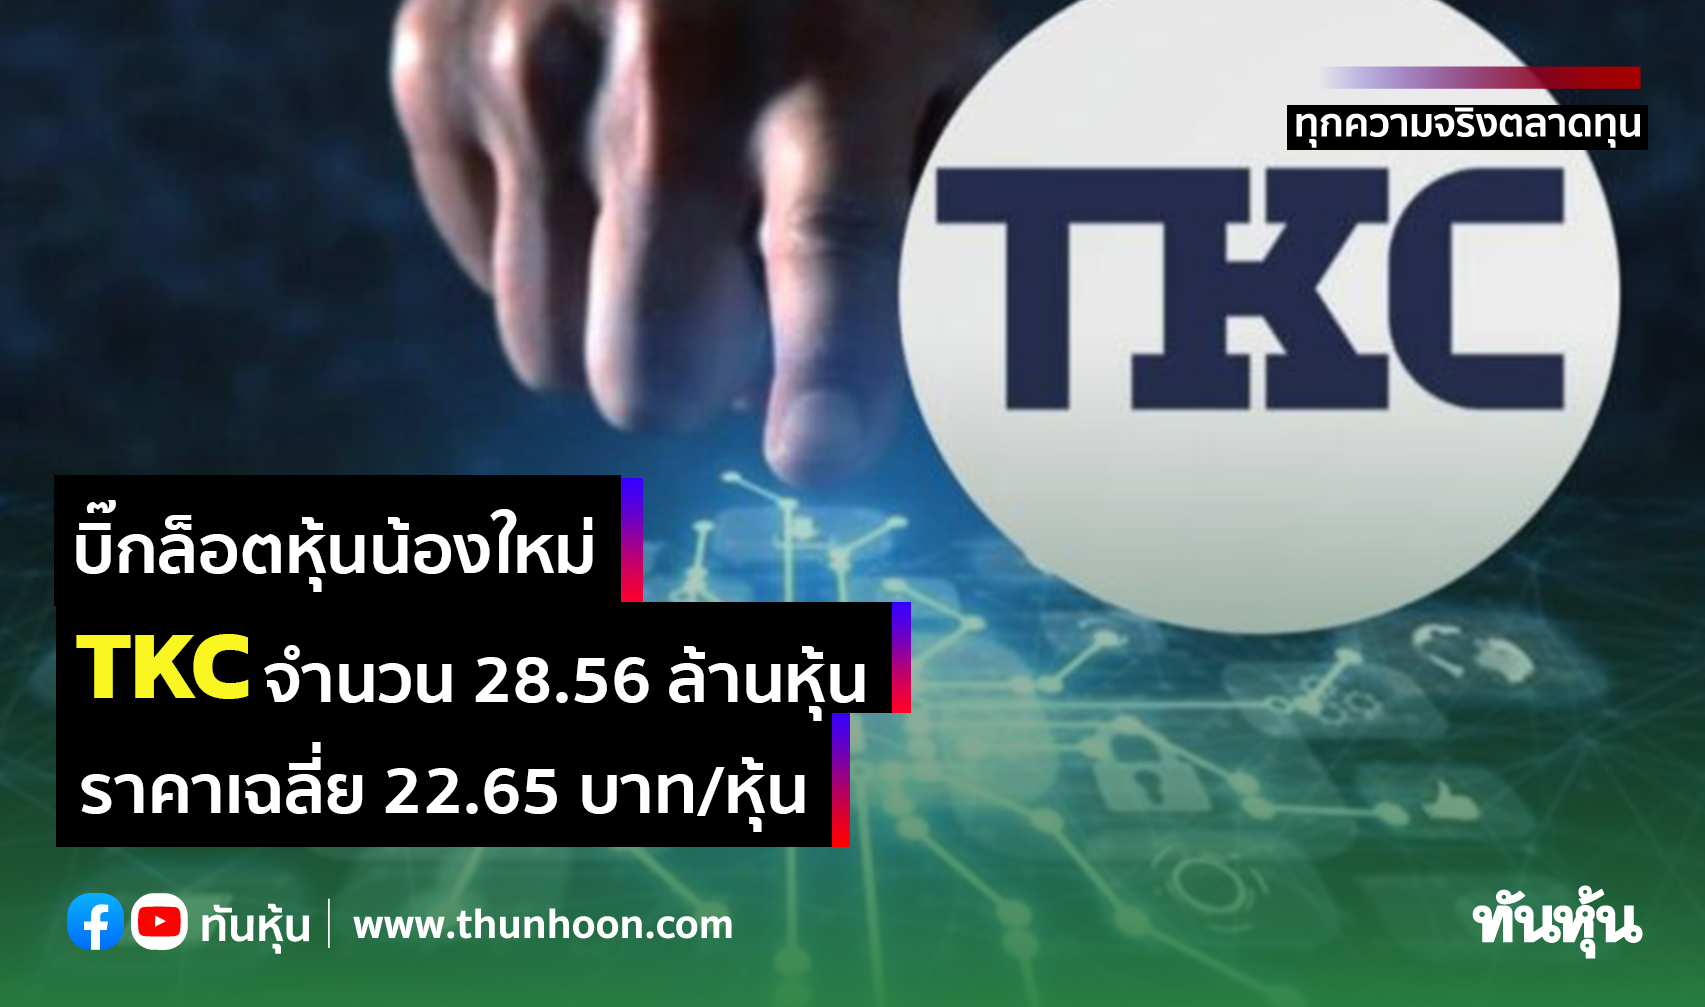 บิ๊กล็อตหุ้นน้องใหม่ TKC จำนวน 28.56 ล้านหุ้น ราคาเฉลี่ย 22.65 บาท/หุ้น